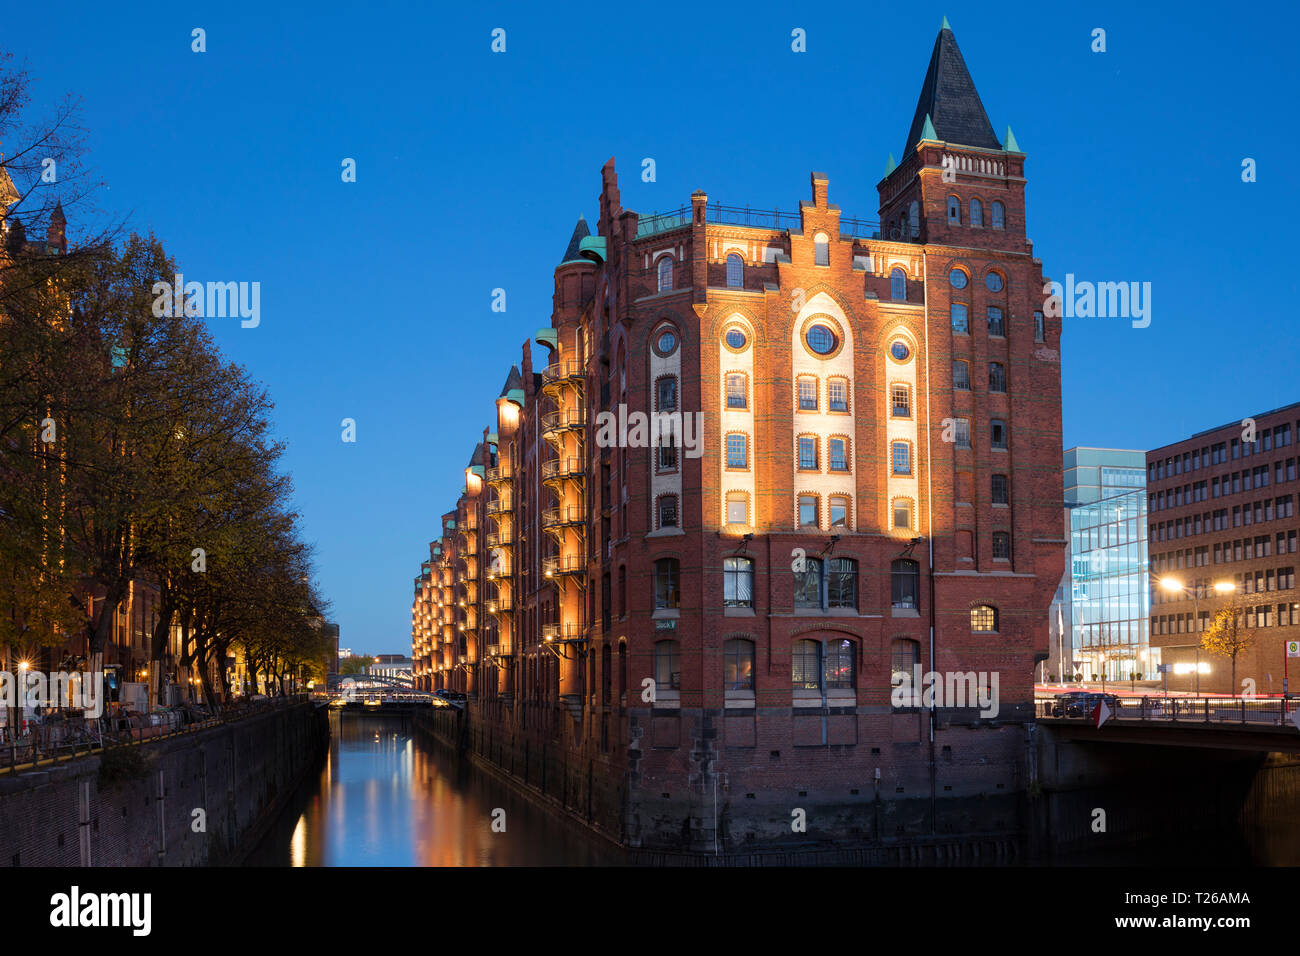 Allemagne, Hambourg, Speicherstadt, ancien entrepôt au crépuscule Banque D'Images